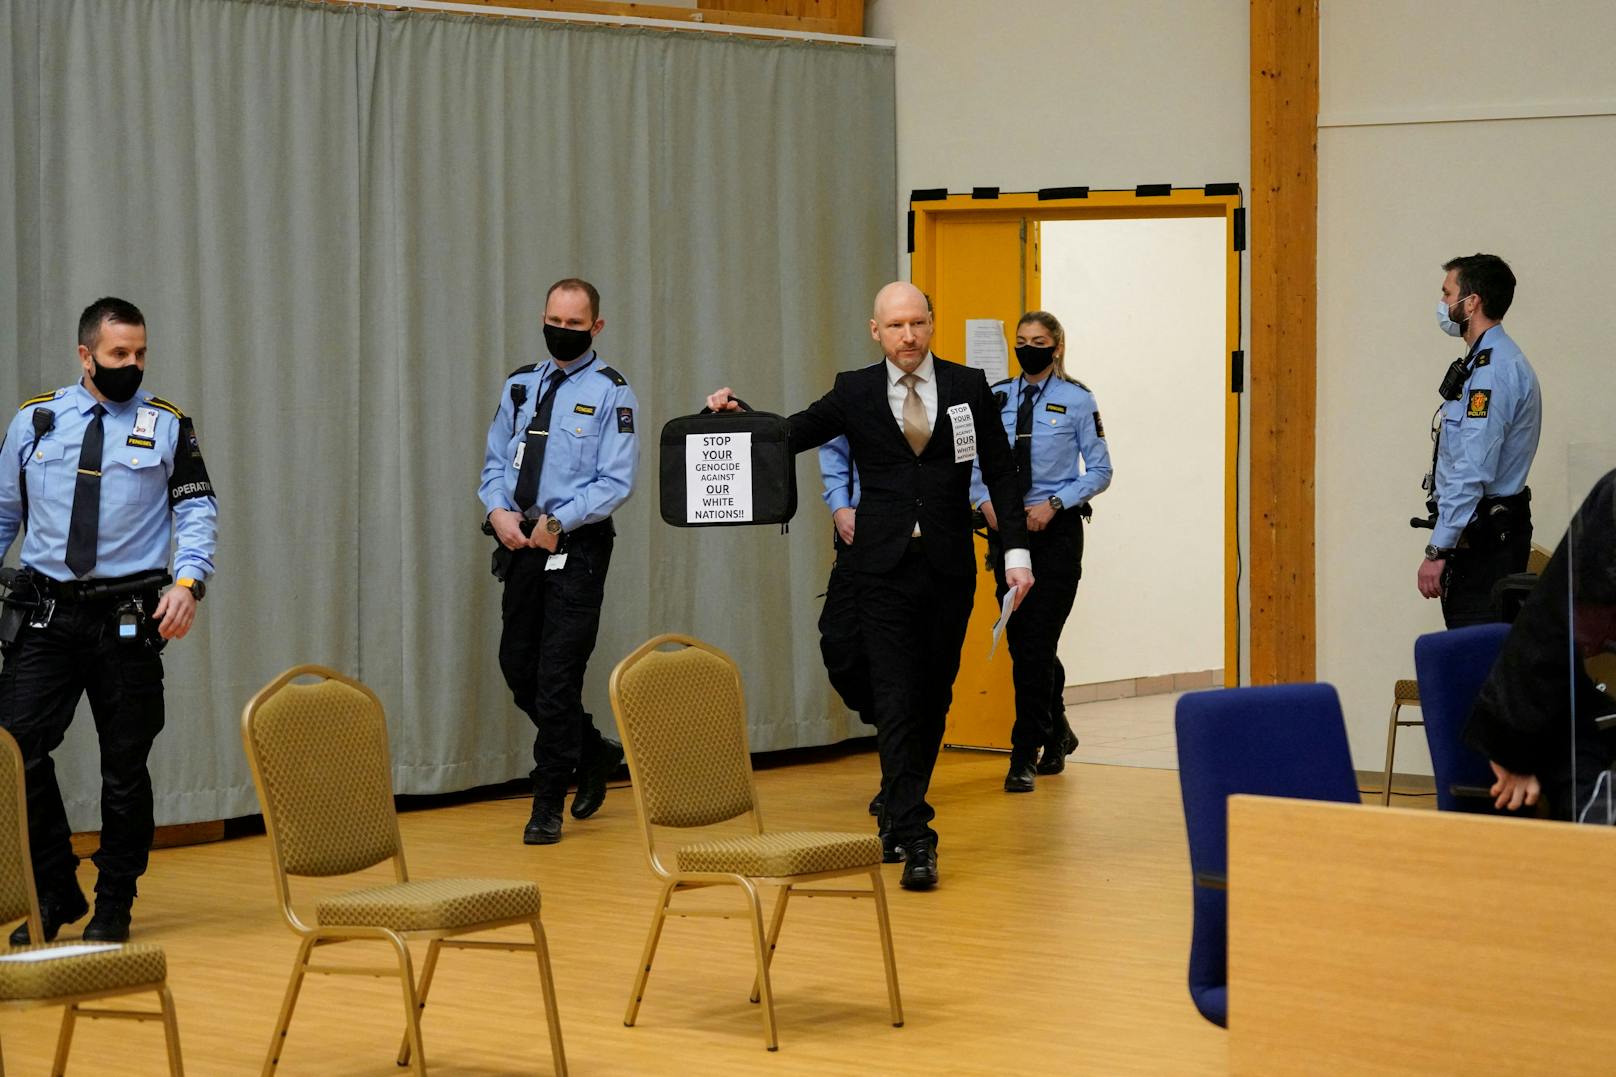 Massenmörder Andres Breivik bei seiner Ankunft vor Gericht – in der Hand eine Tasche mit rechtsextremer Botschaft.